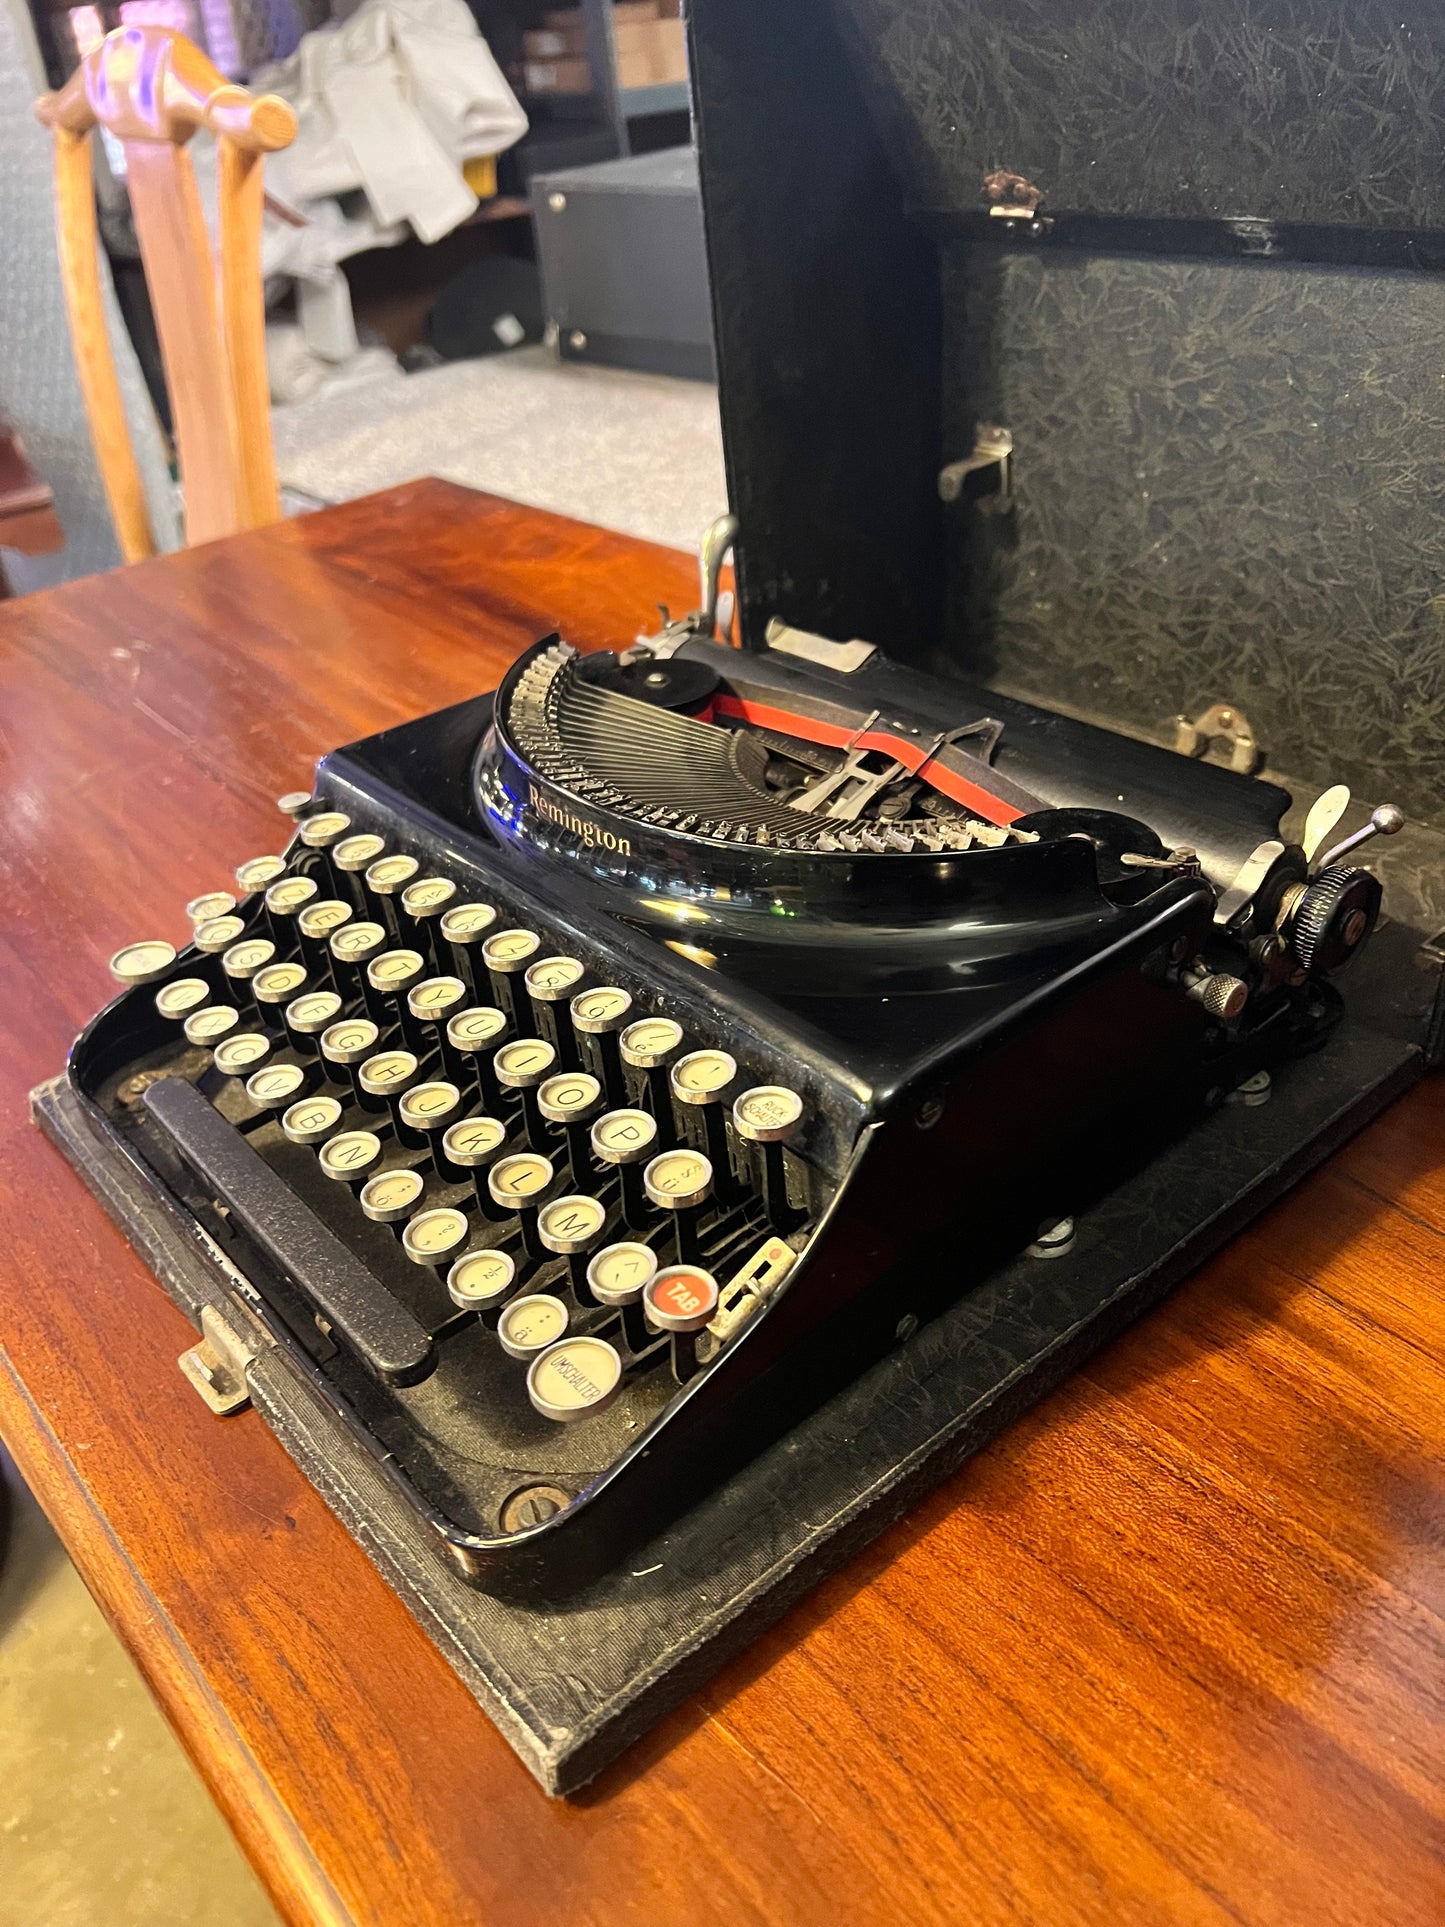 Maquina de Escribir Remington